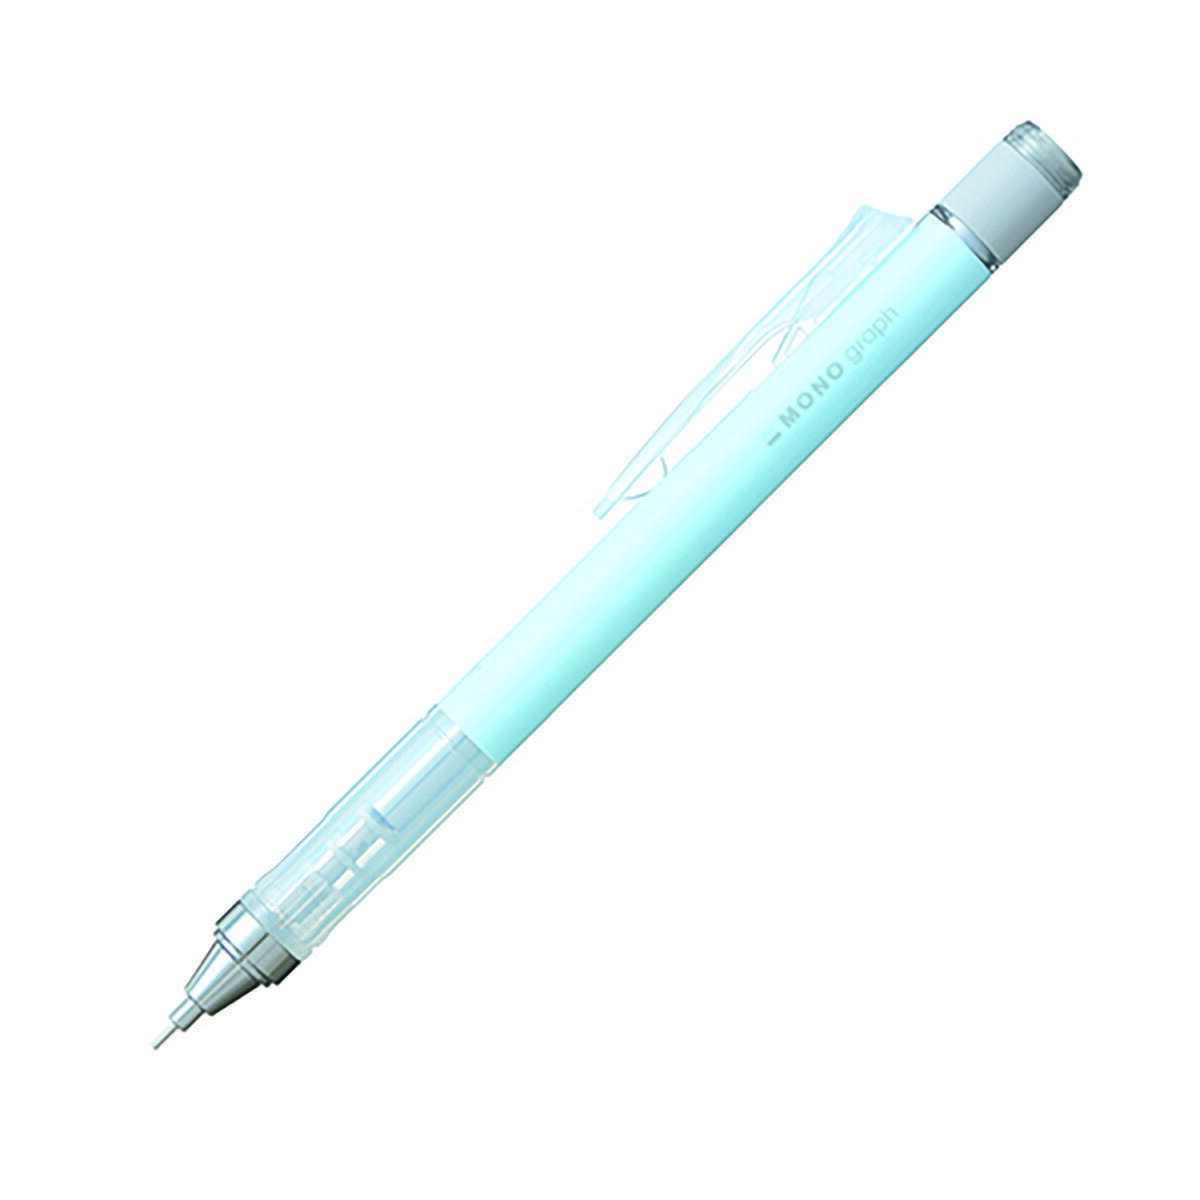 「 トンボ鉛筆 シャープペンシル モノグラフ アイスブルー DPA136-A シャーペン 」 